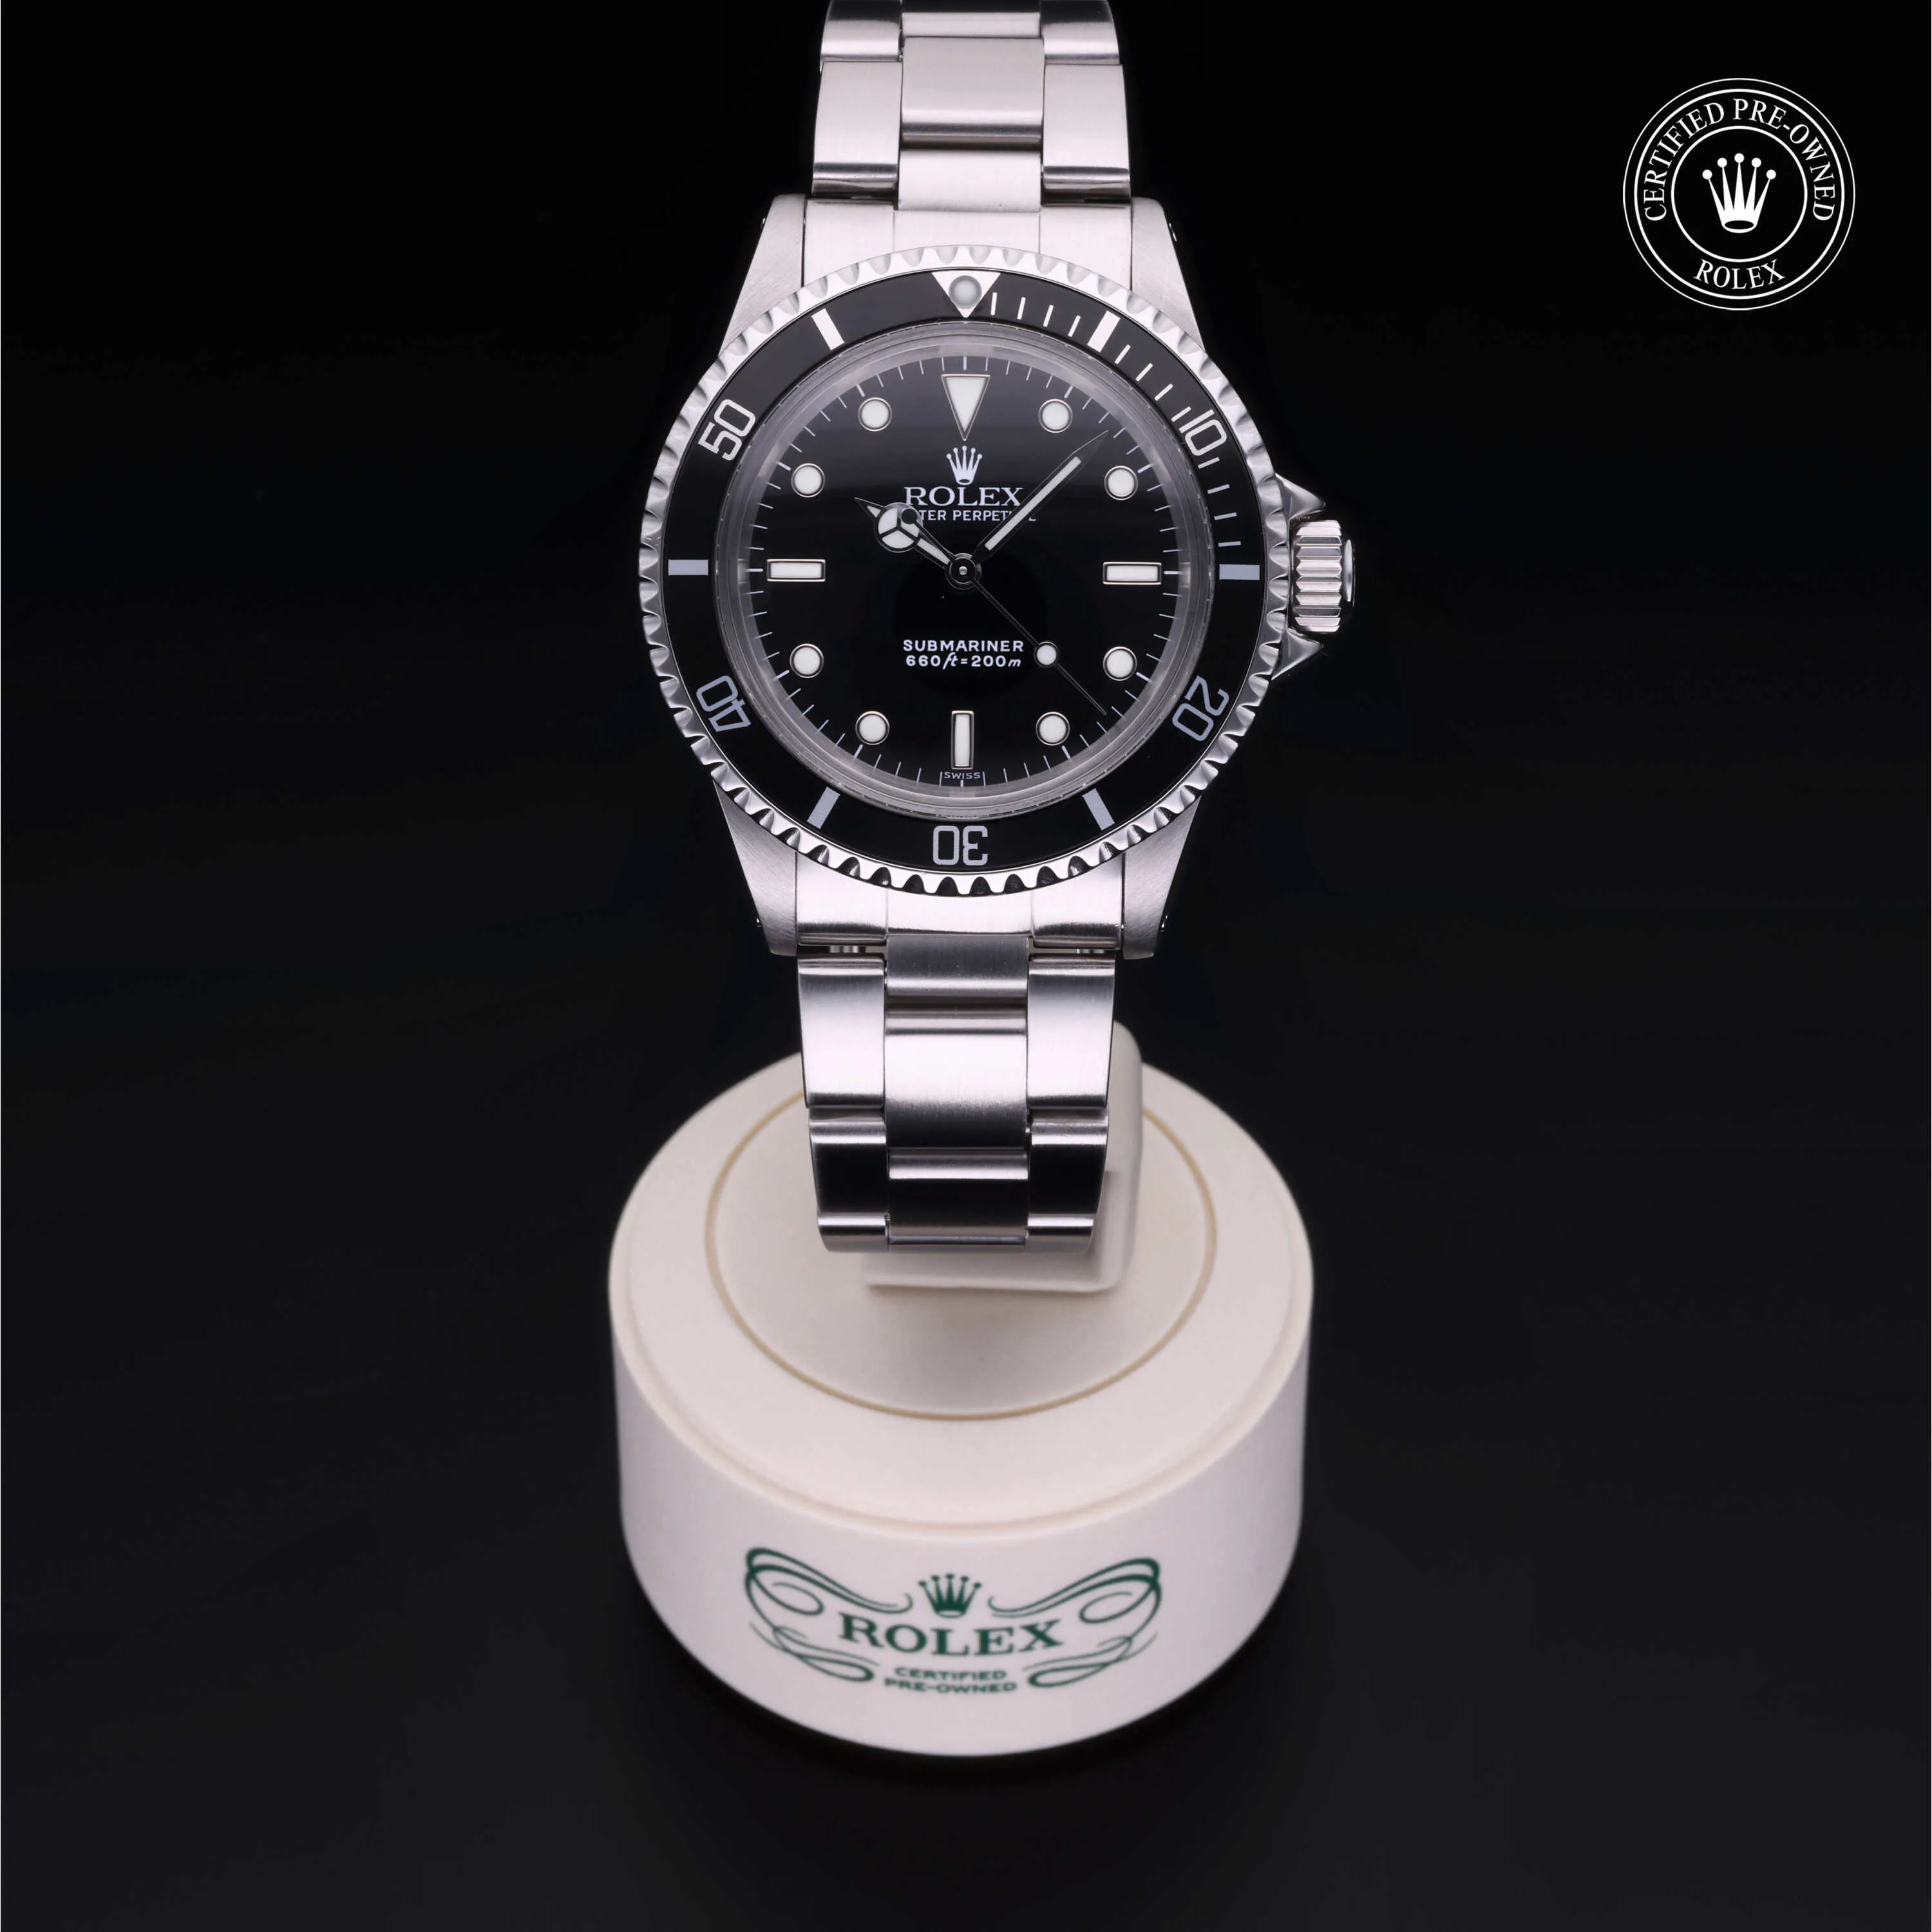 Rolex Submariner 5513/0 nullmm Stainless steel Black 1